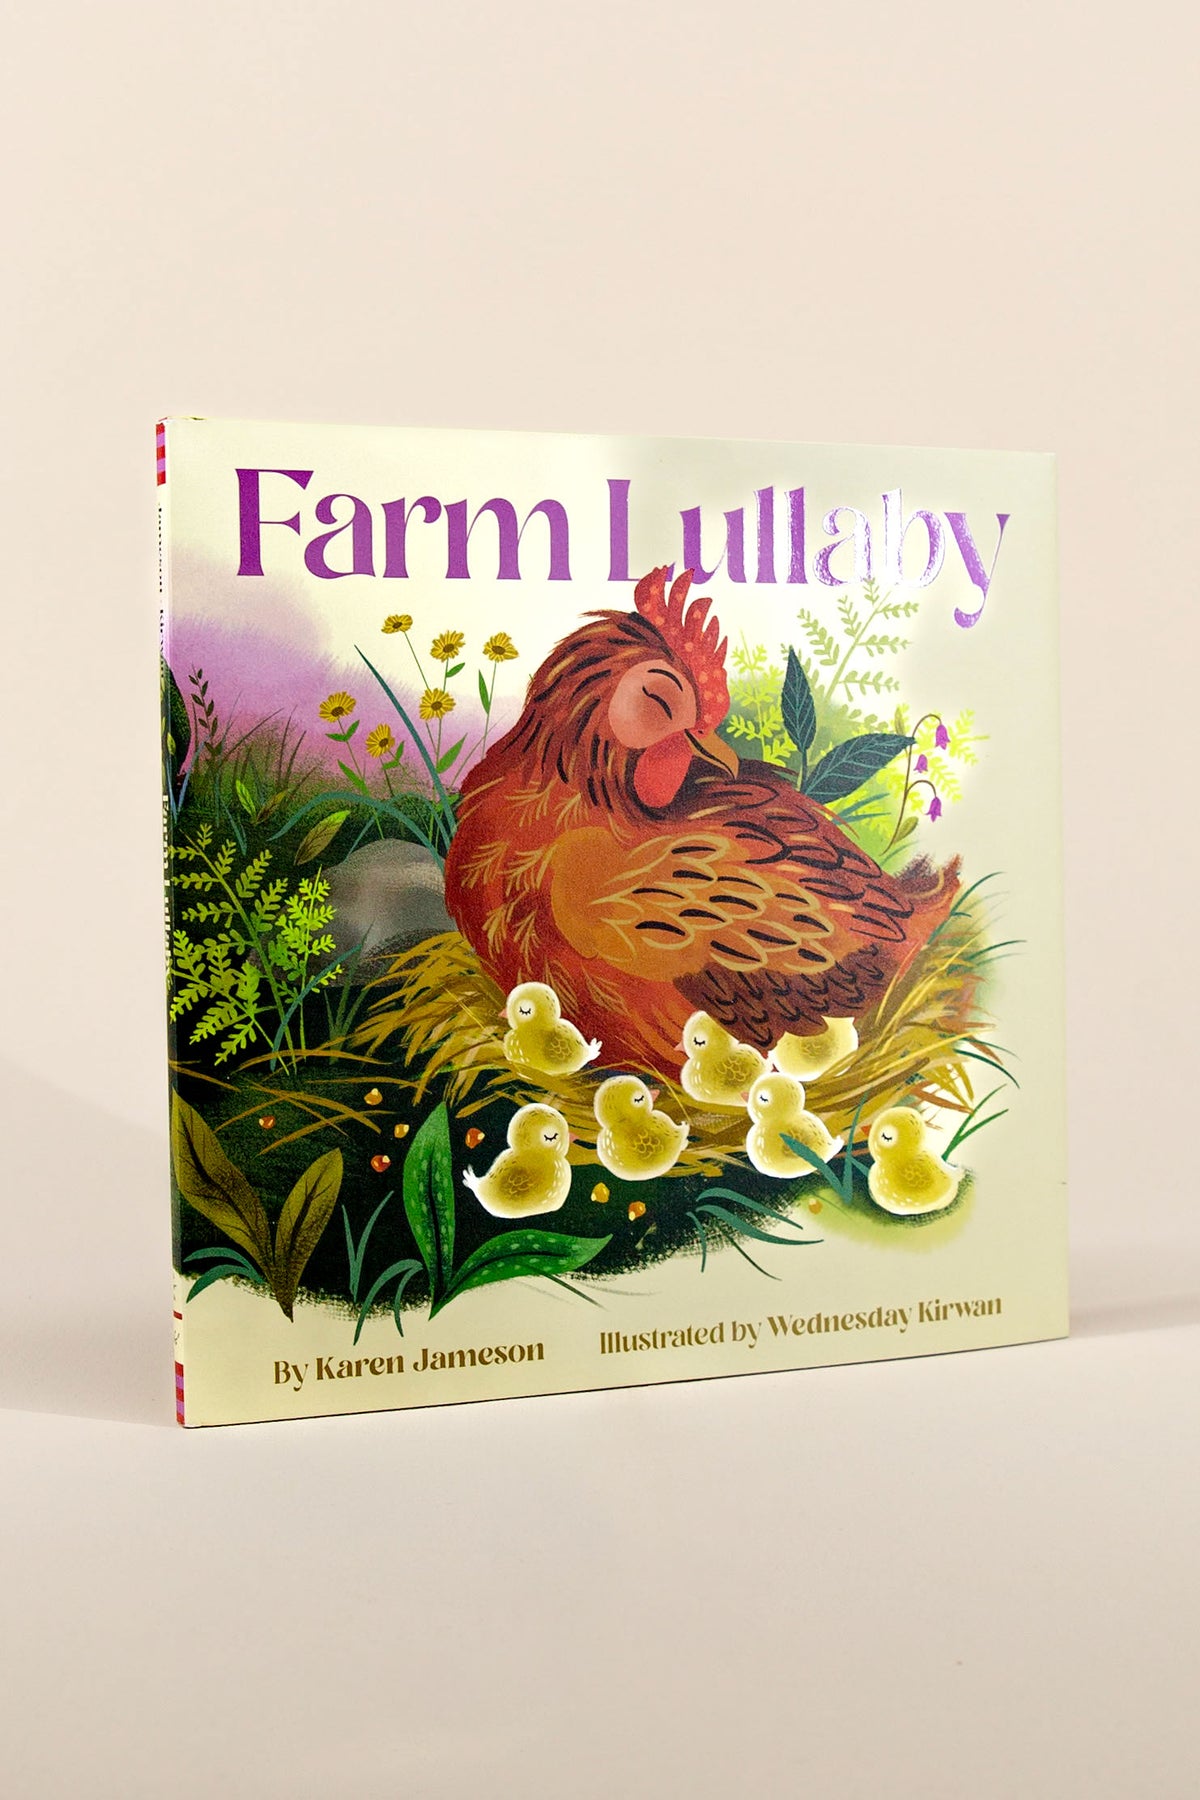 farm lullaby